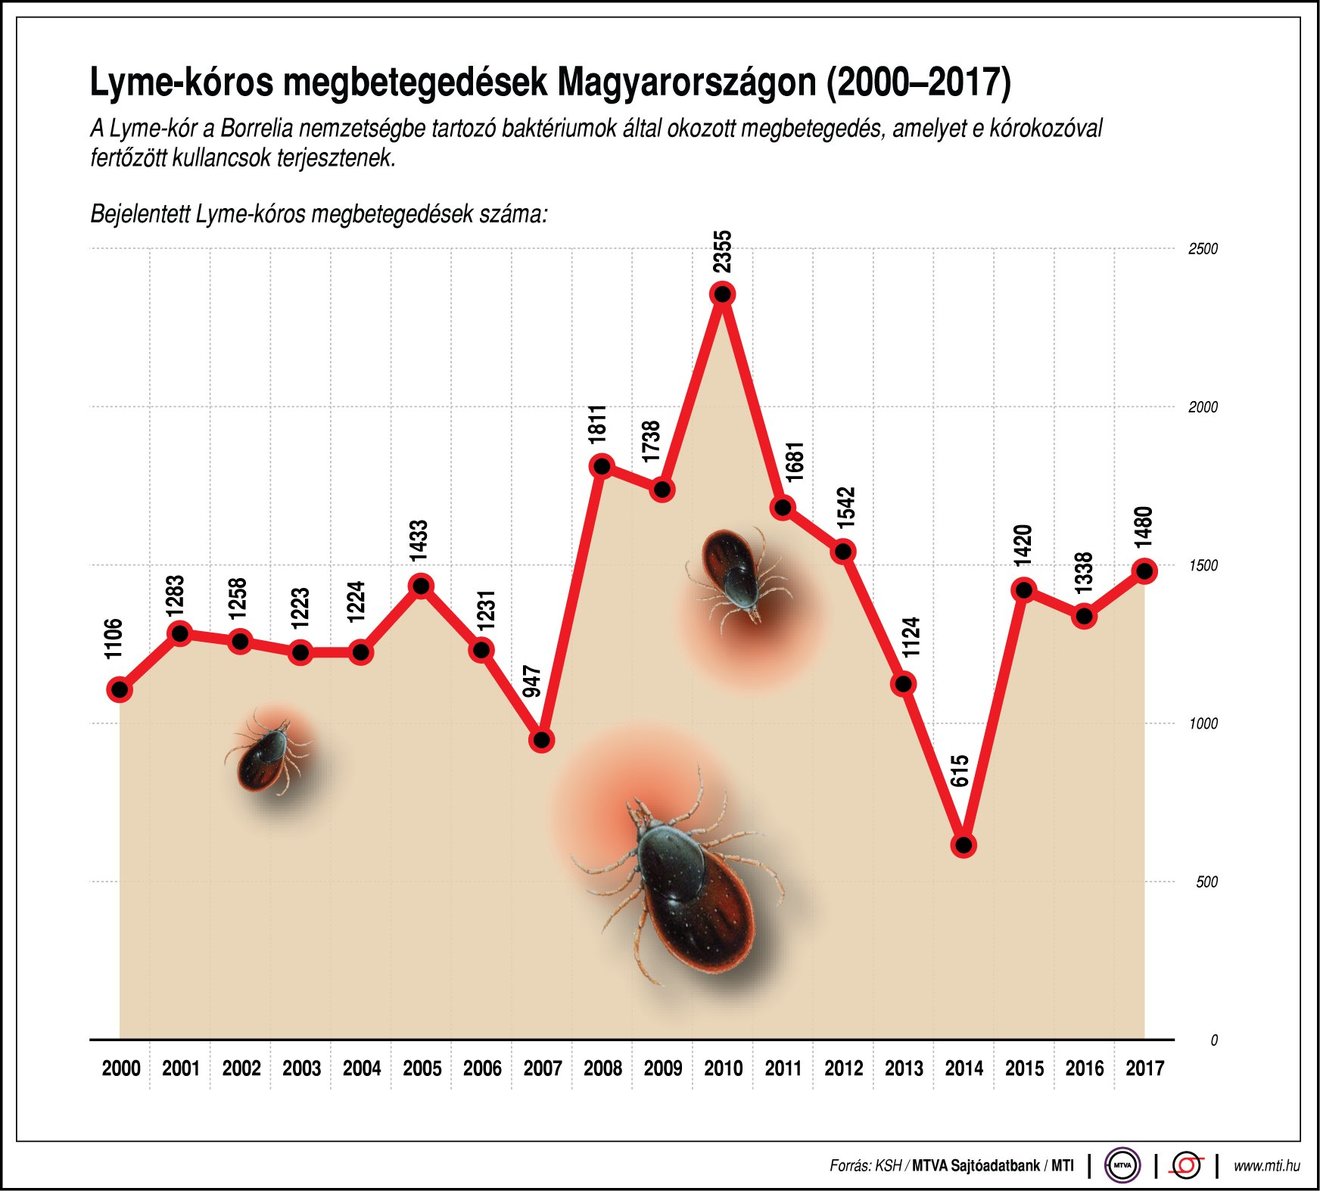 Új magyar eljárás segíthet kimutatni a Lyme-kórt